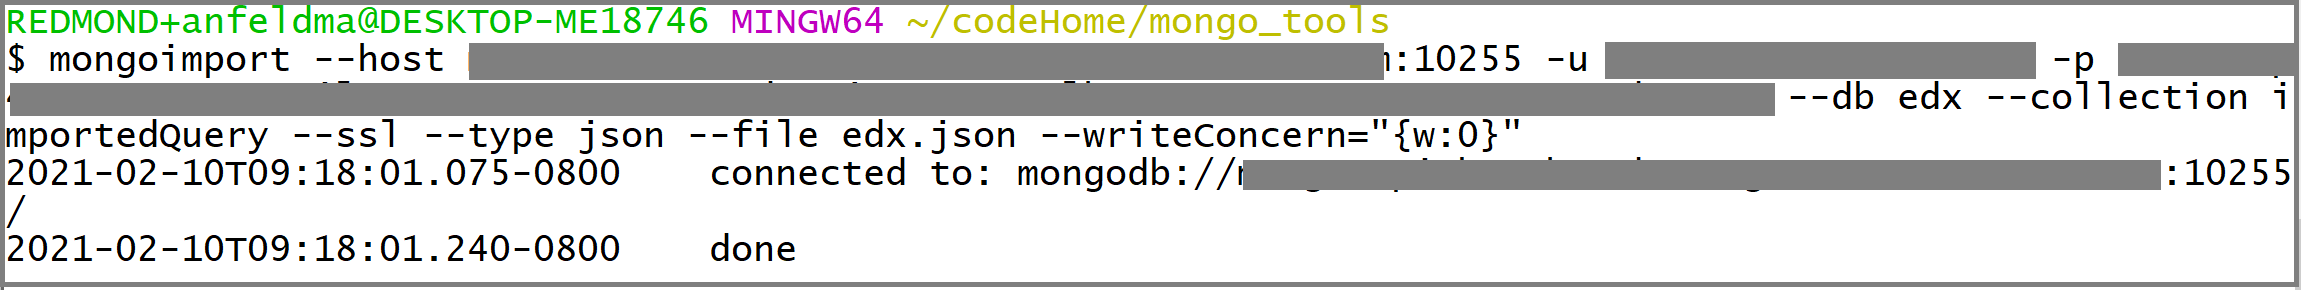 Mongoimport çağrısının ekran görüntüsü.